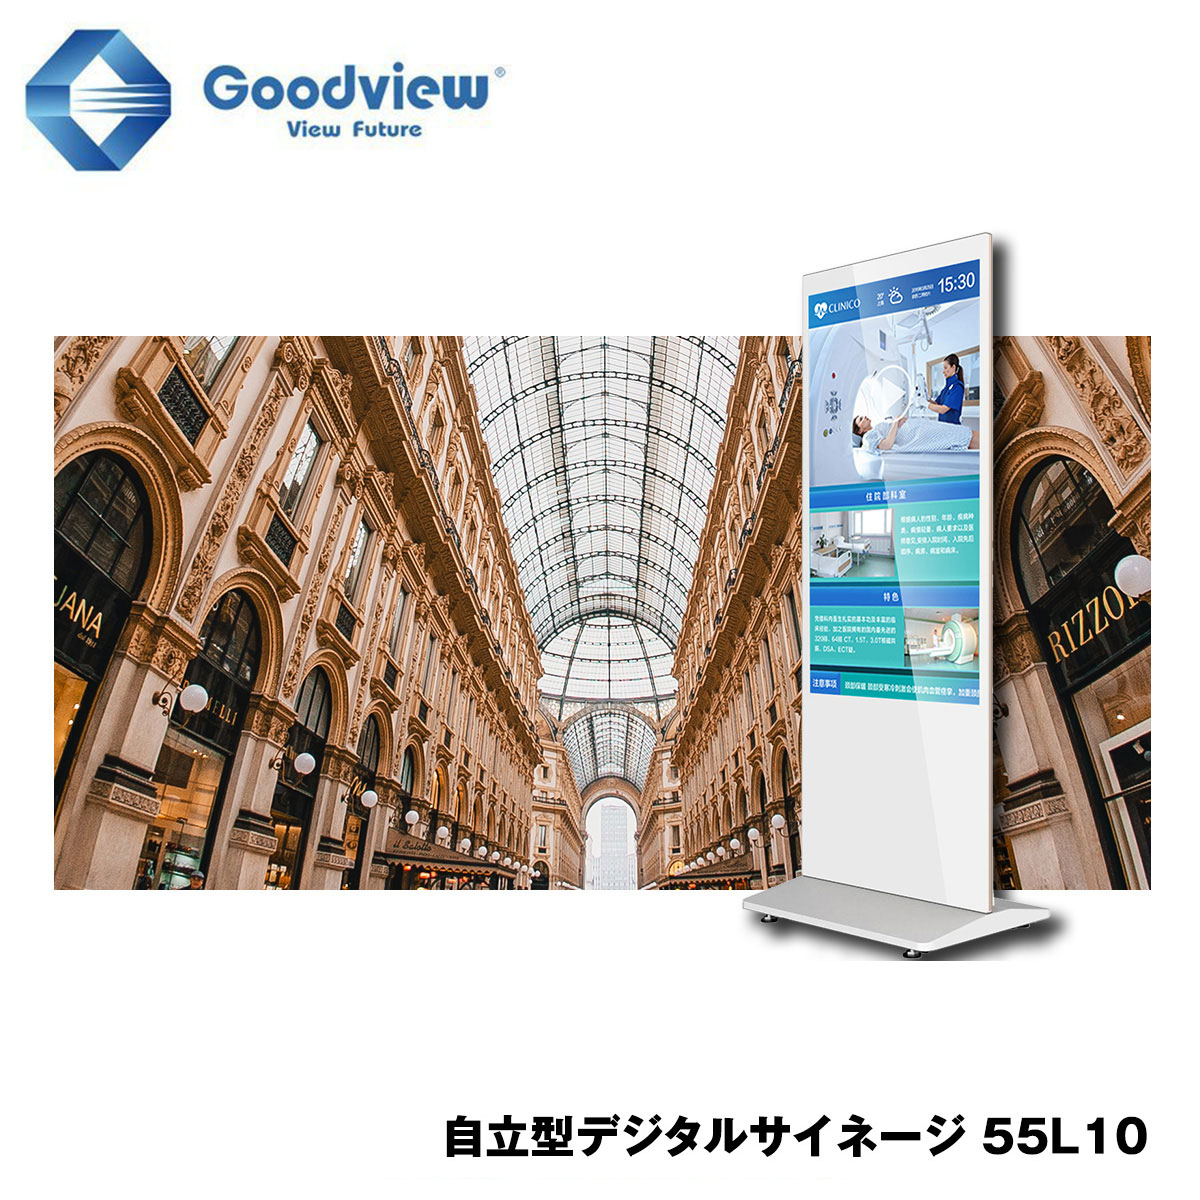 Goodview デジタルサイネージ タッチパネルサイネージ スタンド一体型 450カンデラ 55型【55L10】